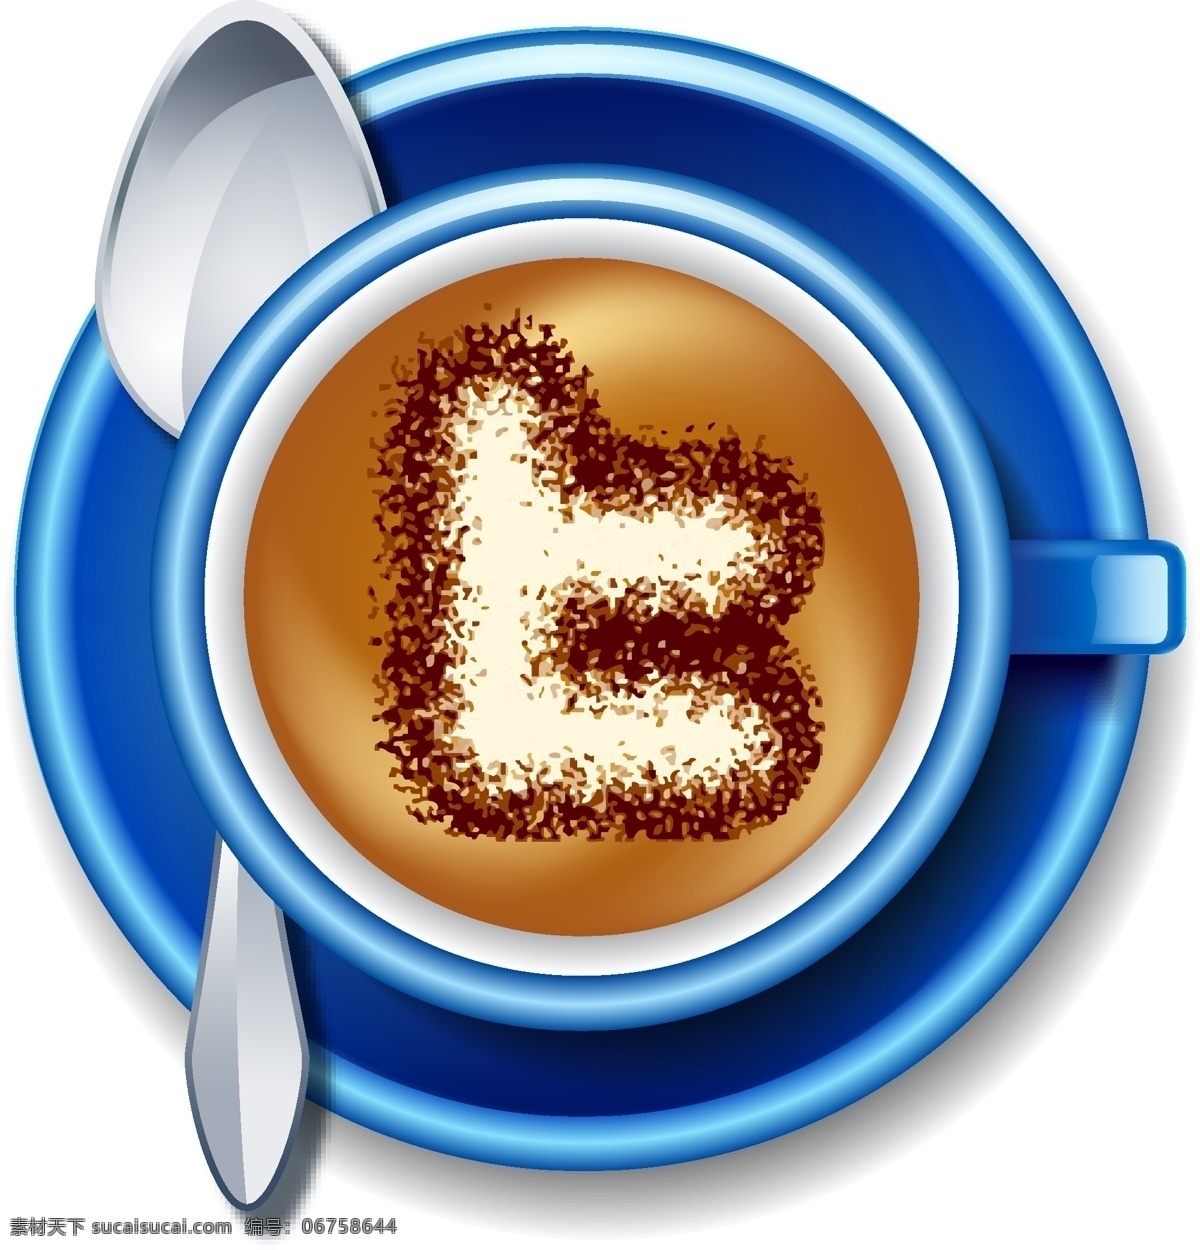 創 意 咖啡 杯子 餐饮美食 生活百科 矢量 模板下载 創意咖啡 湯匙 盤子 矢量图 日常生活